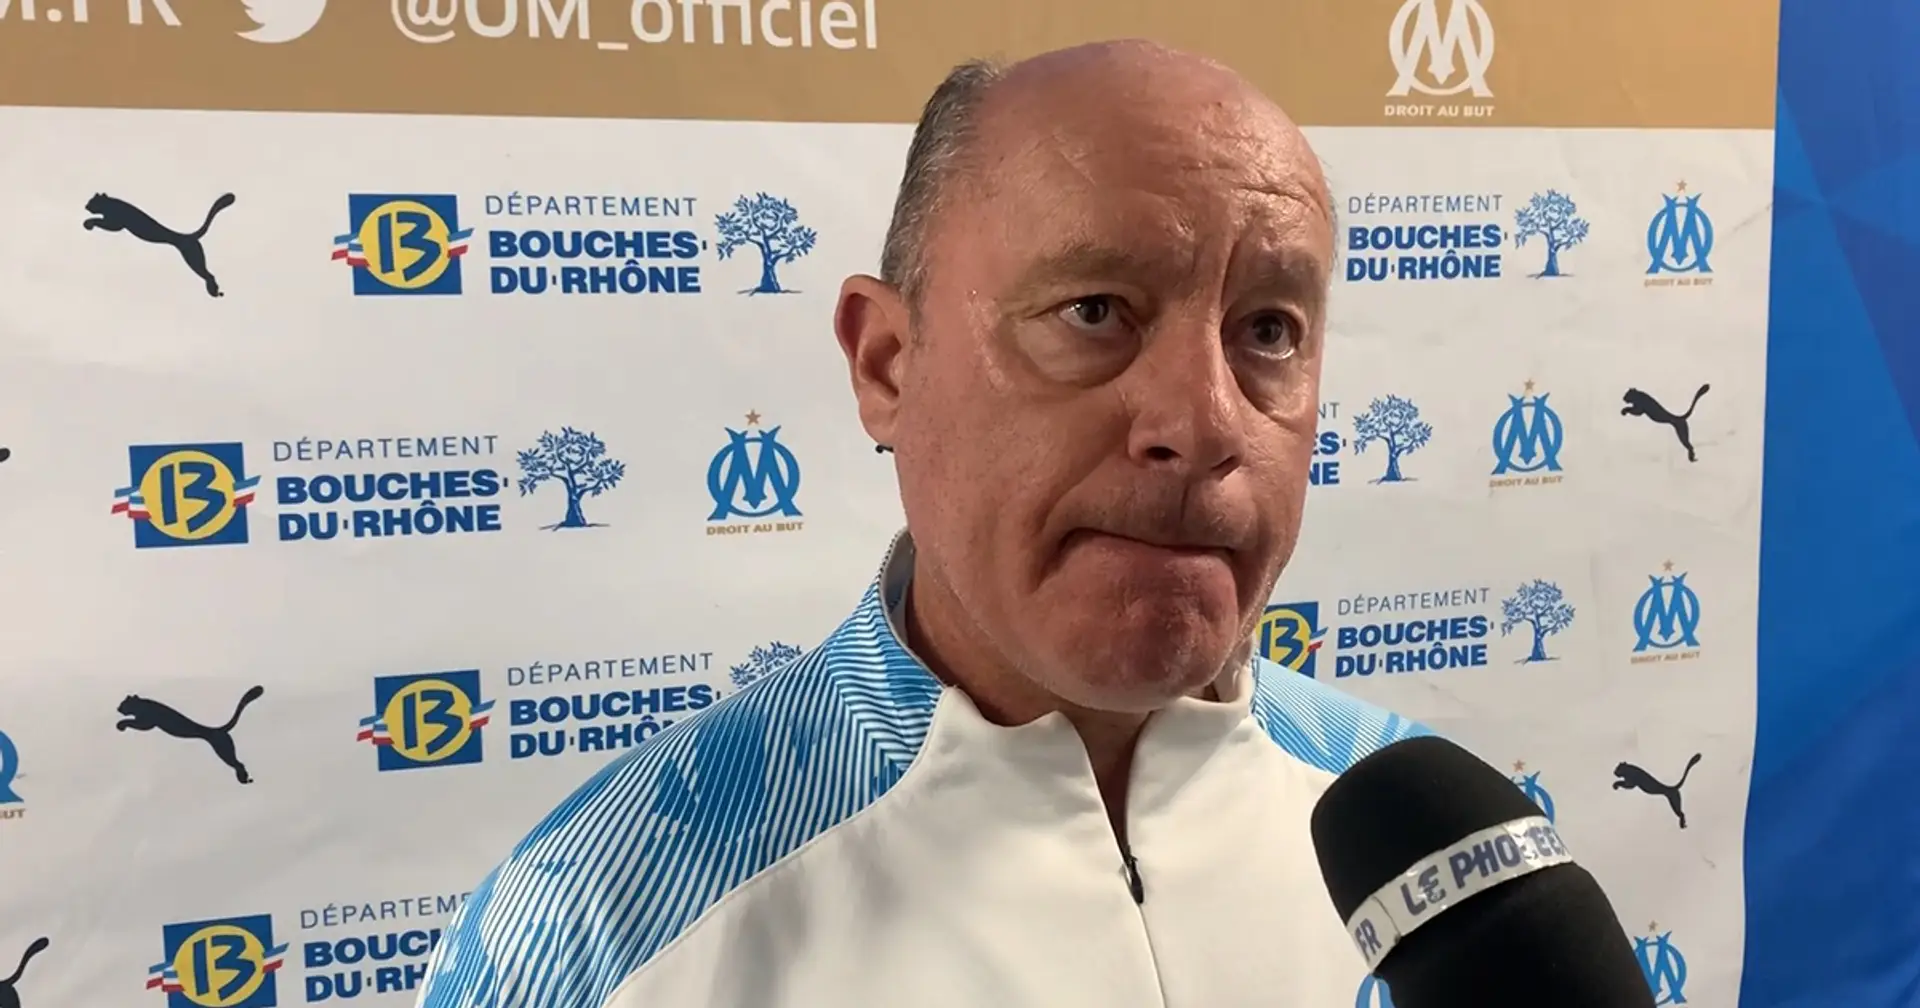 "On a fait de bonnes choses, on s'est accroché", le coach de la réserve de l'OM Philippe Anziani donne son impression sur le match contre l'OL